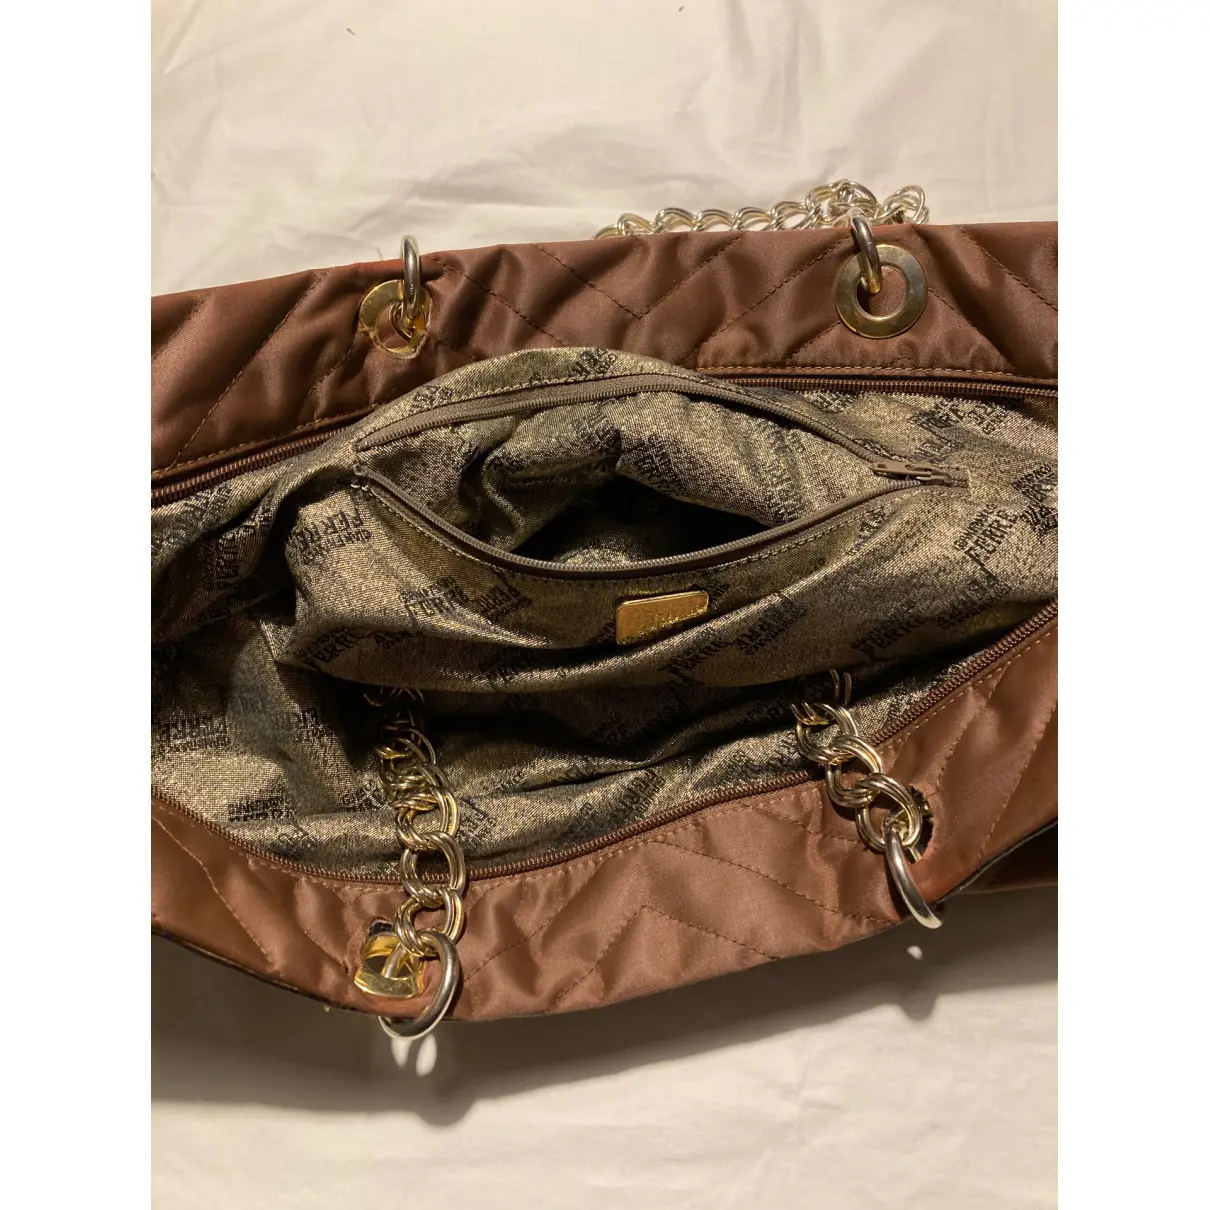 Silk handbag Gianfranco Ferré